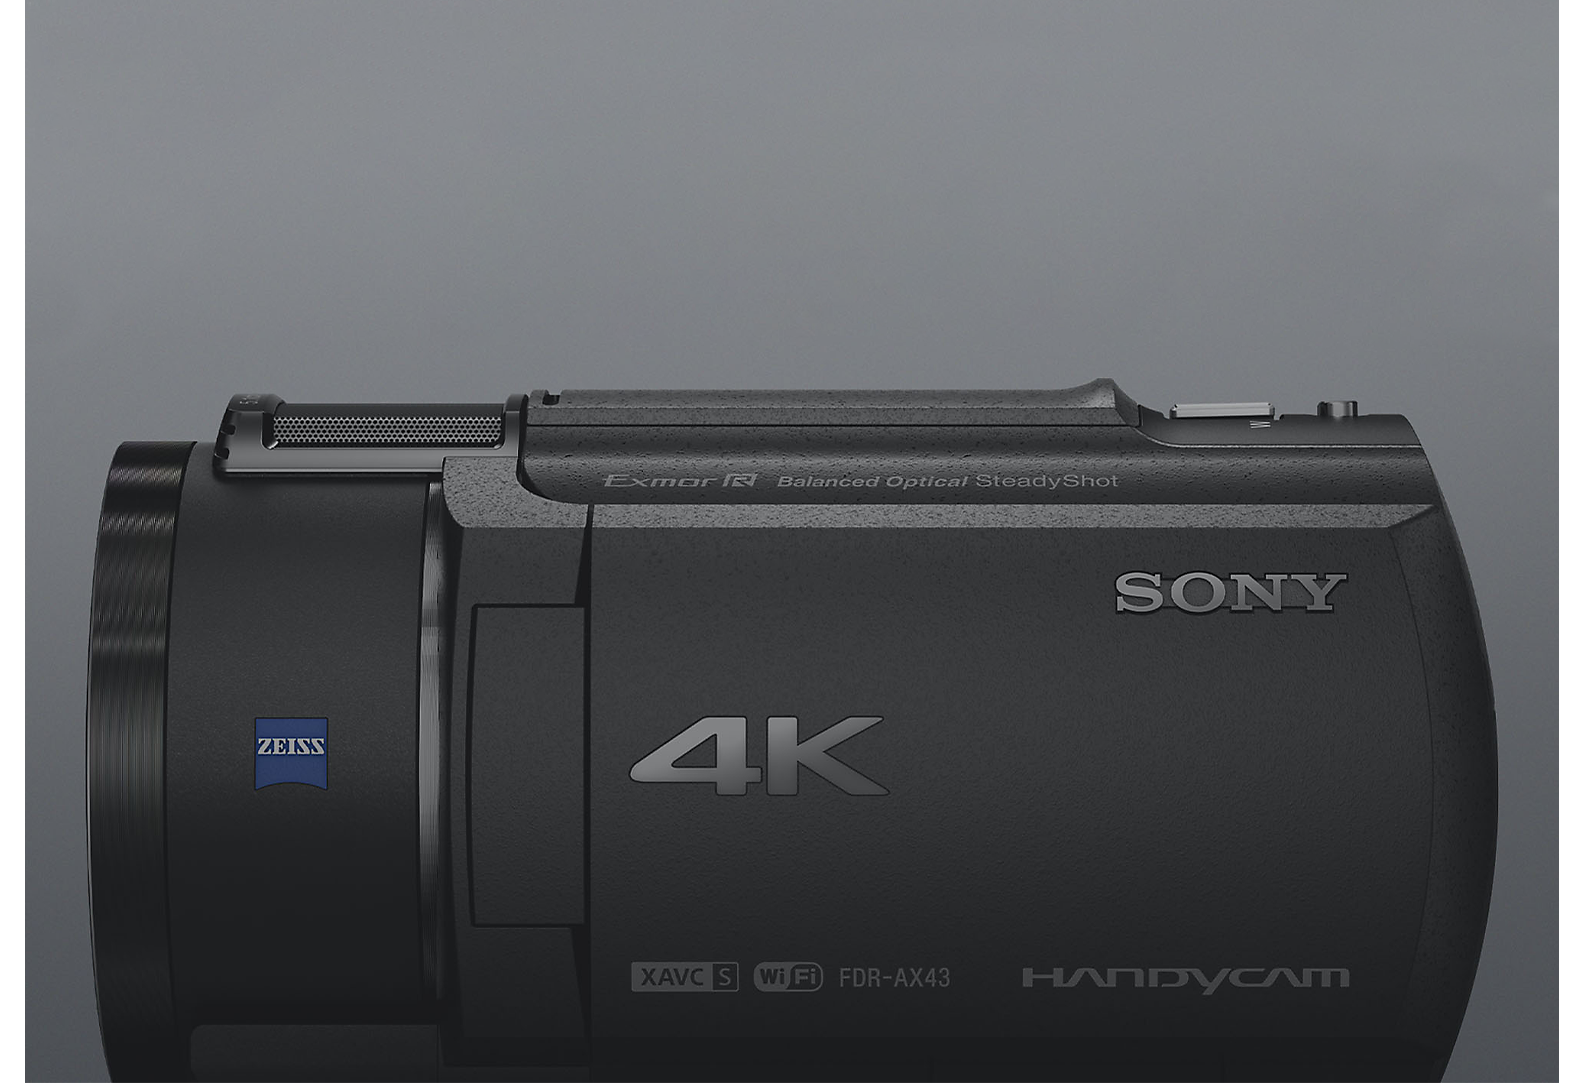 Pogled od strani na kamero Sony 4K Handycam